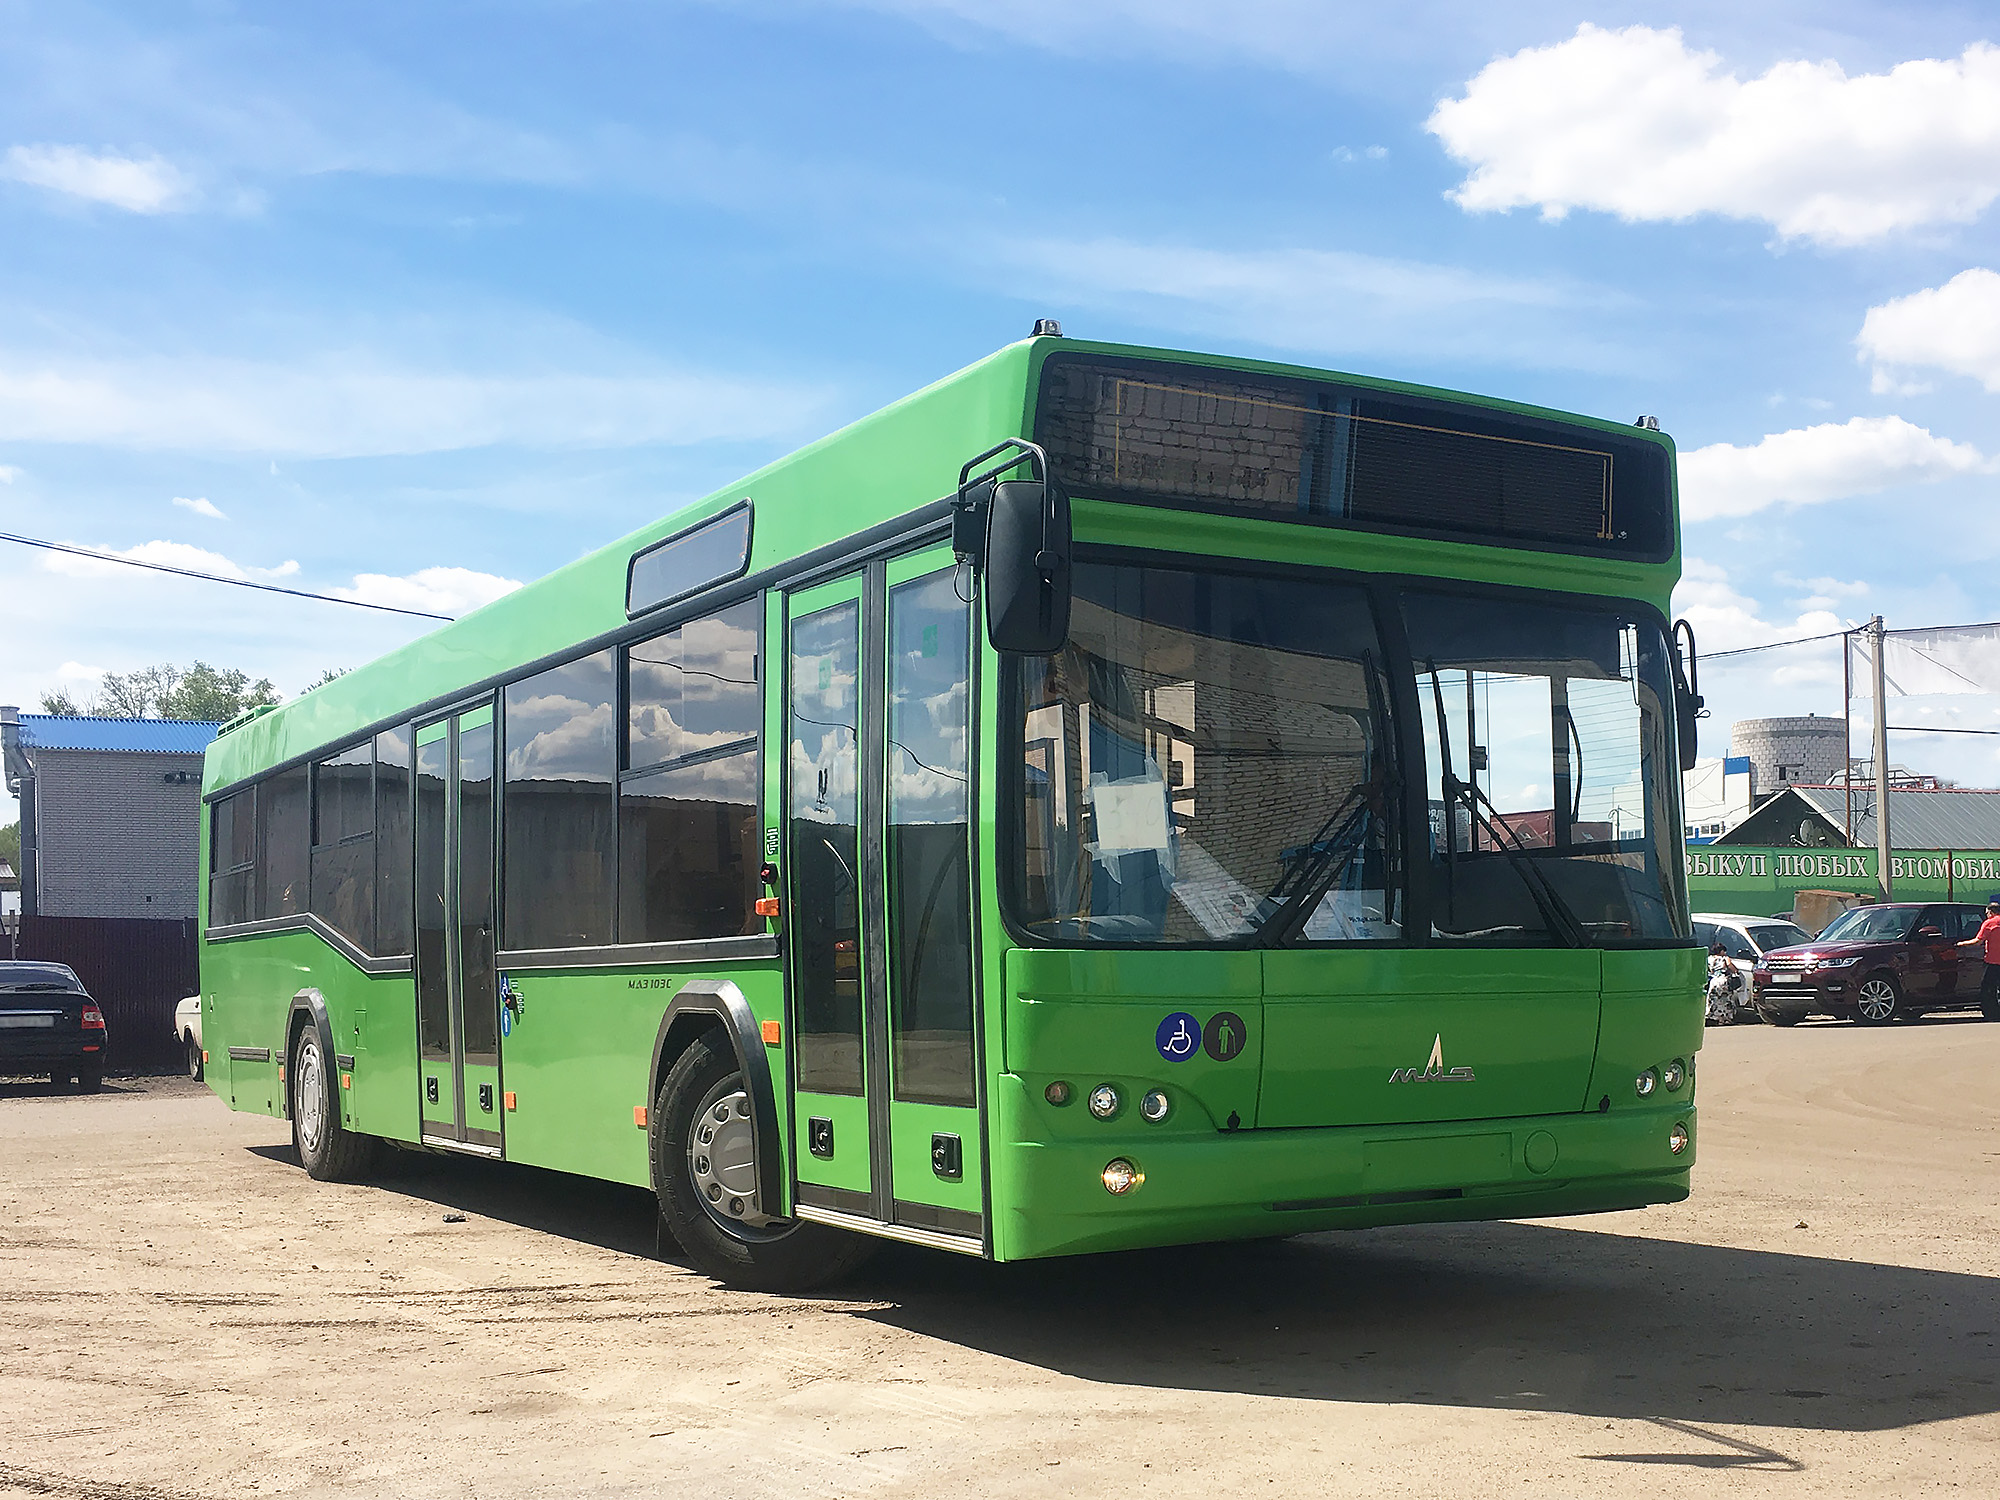 Пригородный низкопольный автобус МАЗ-103585 передан в лизинг